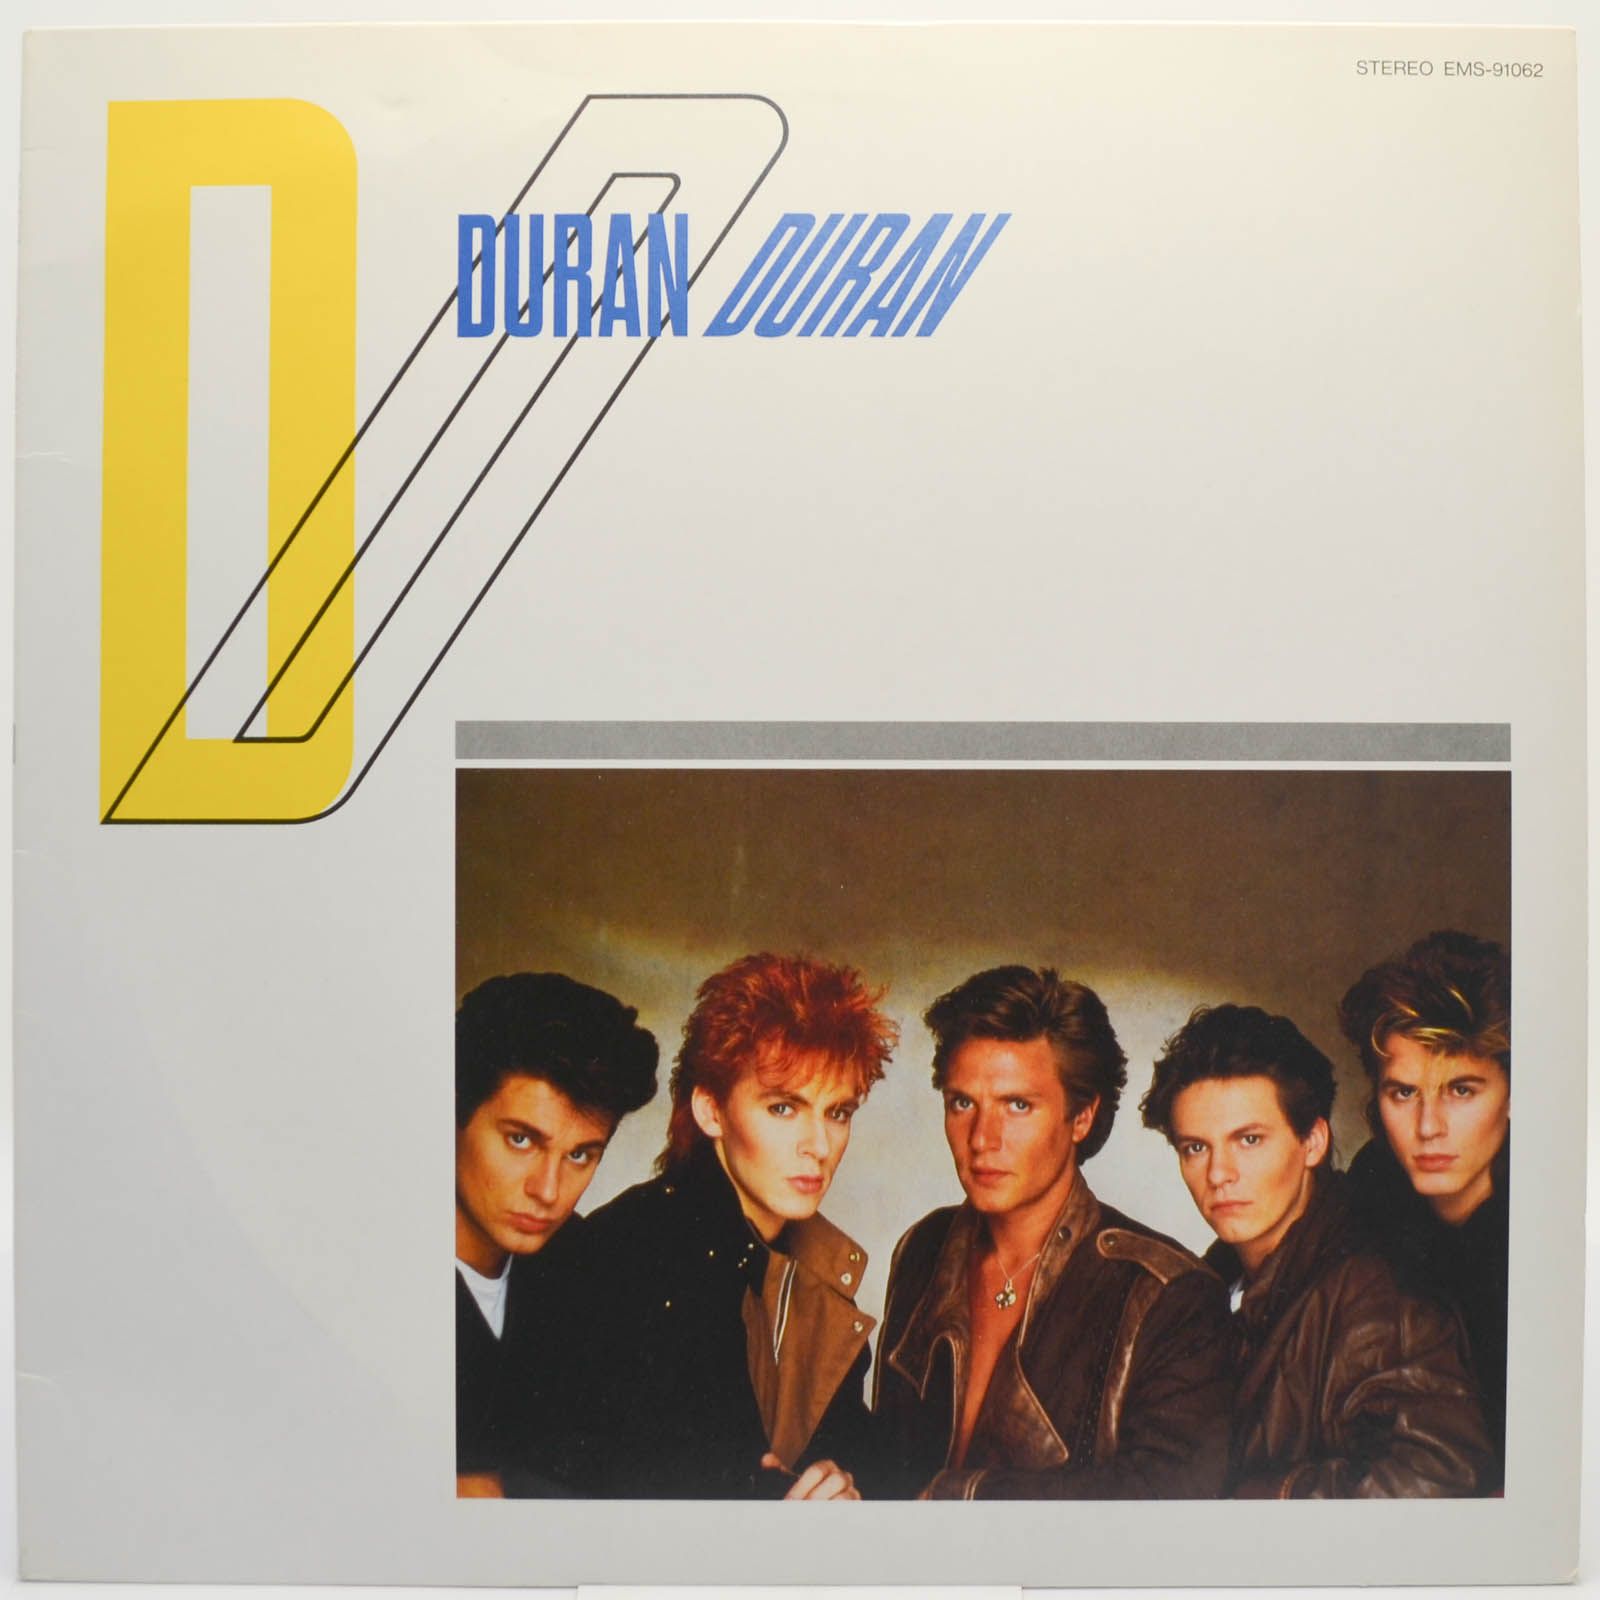 Duran Duran — Duran Duran, 1981